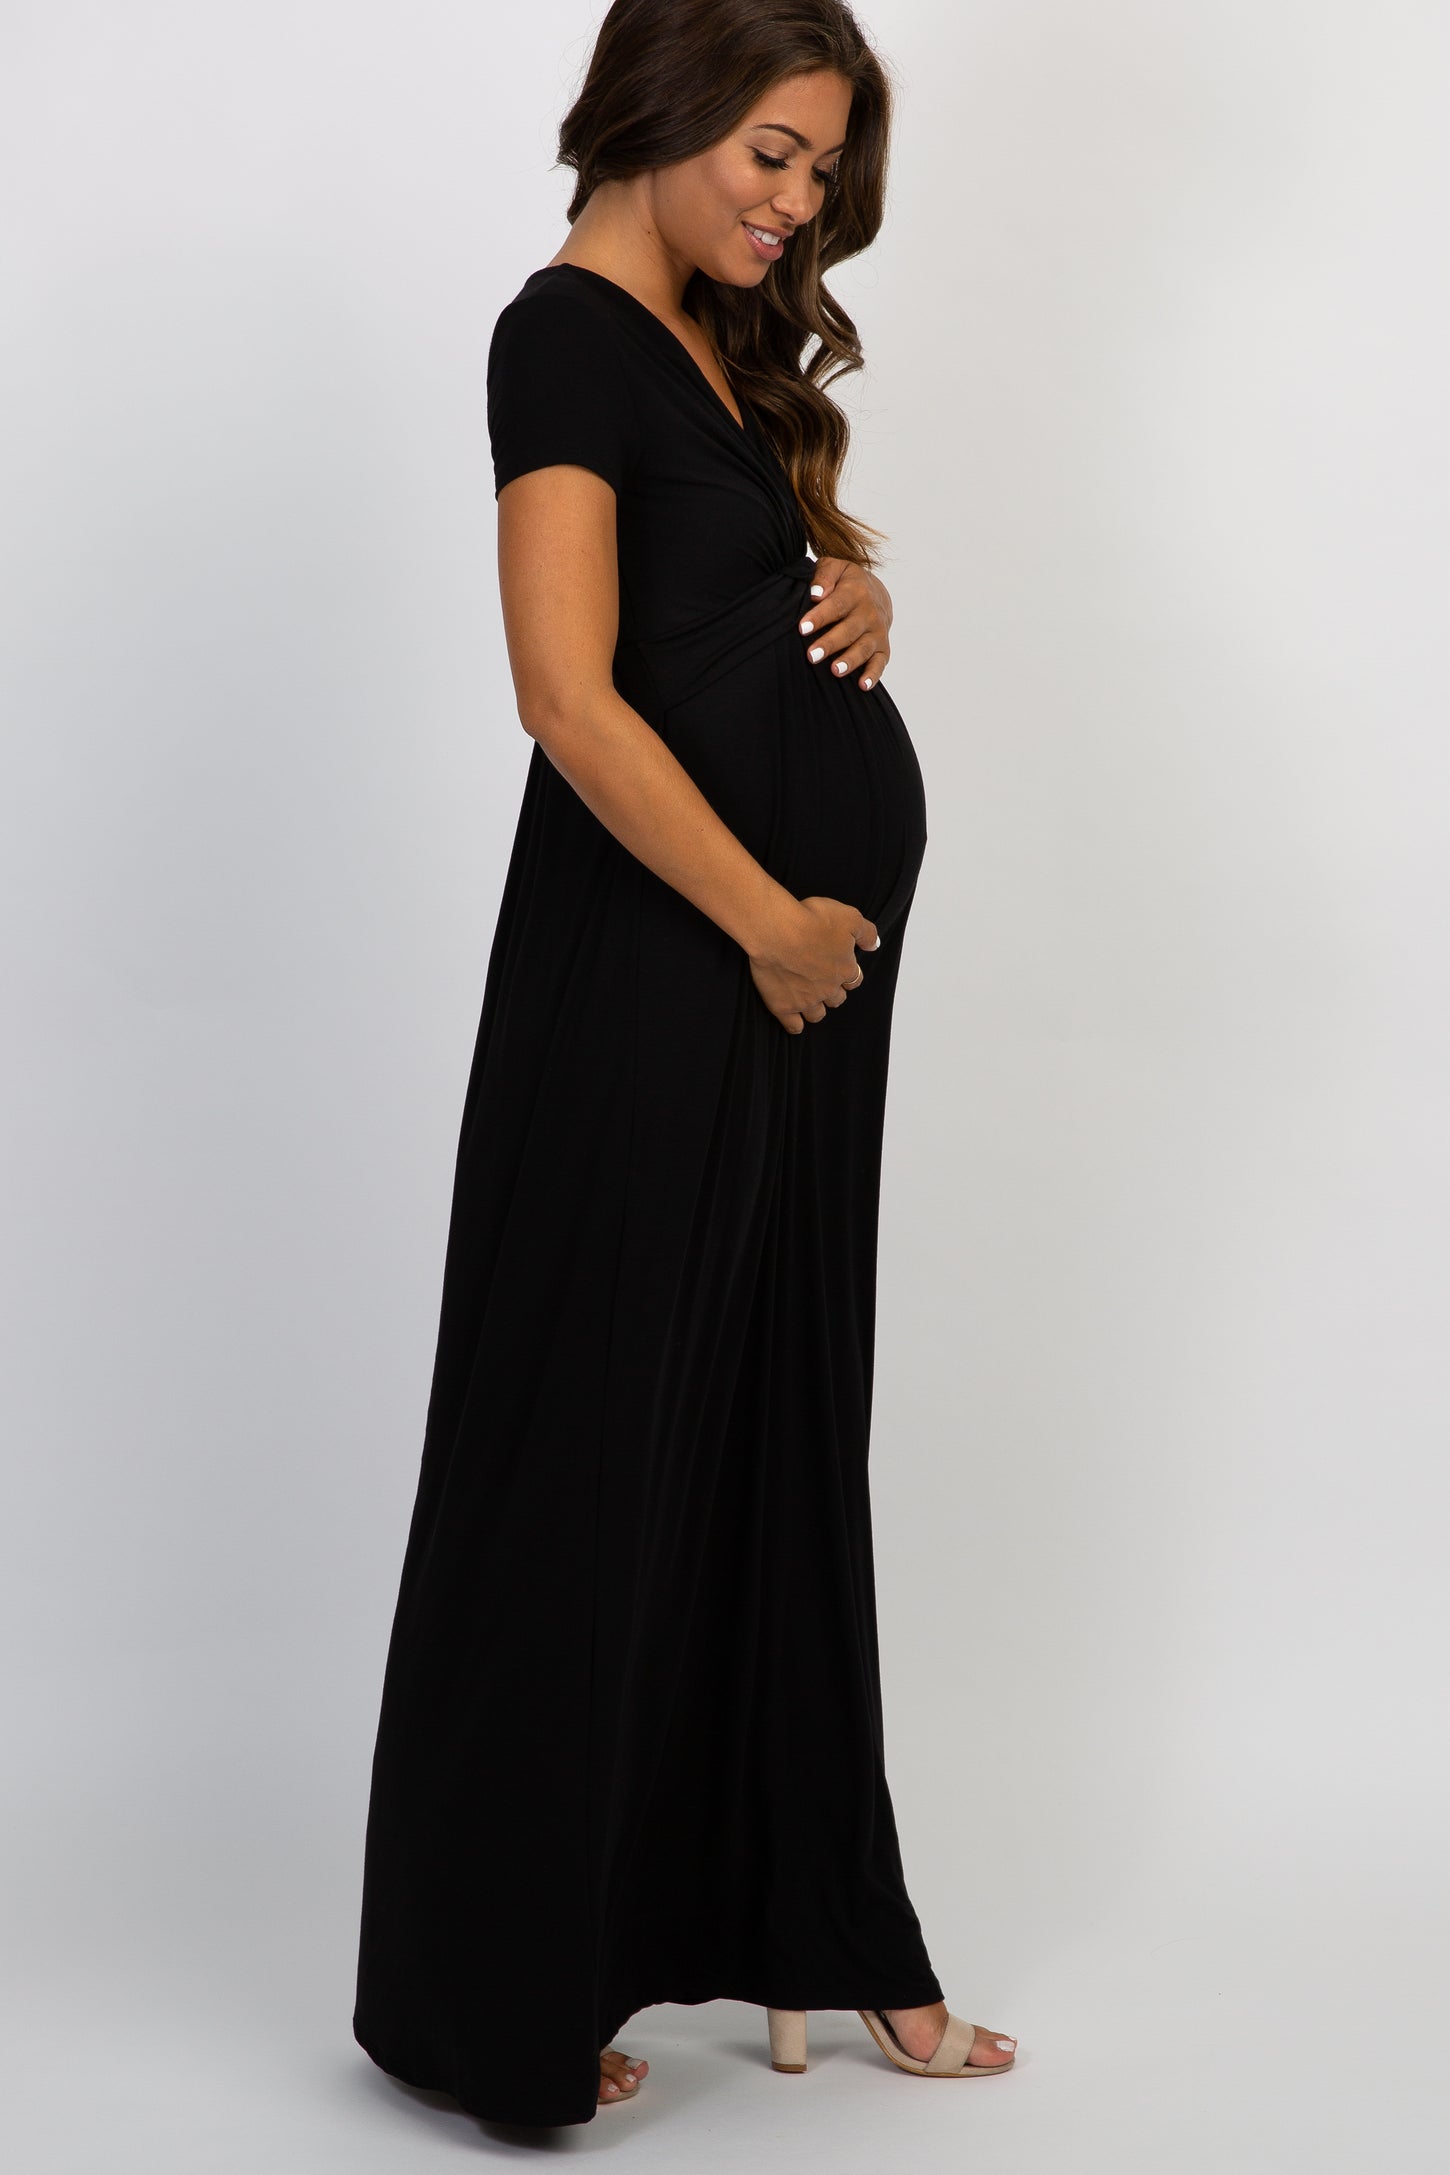 PinkBlush Black Draped Maternity/Nursing Maxi Dress